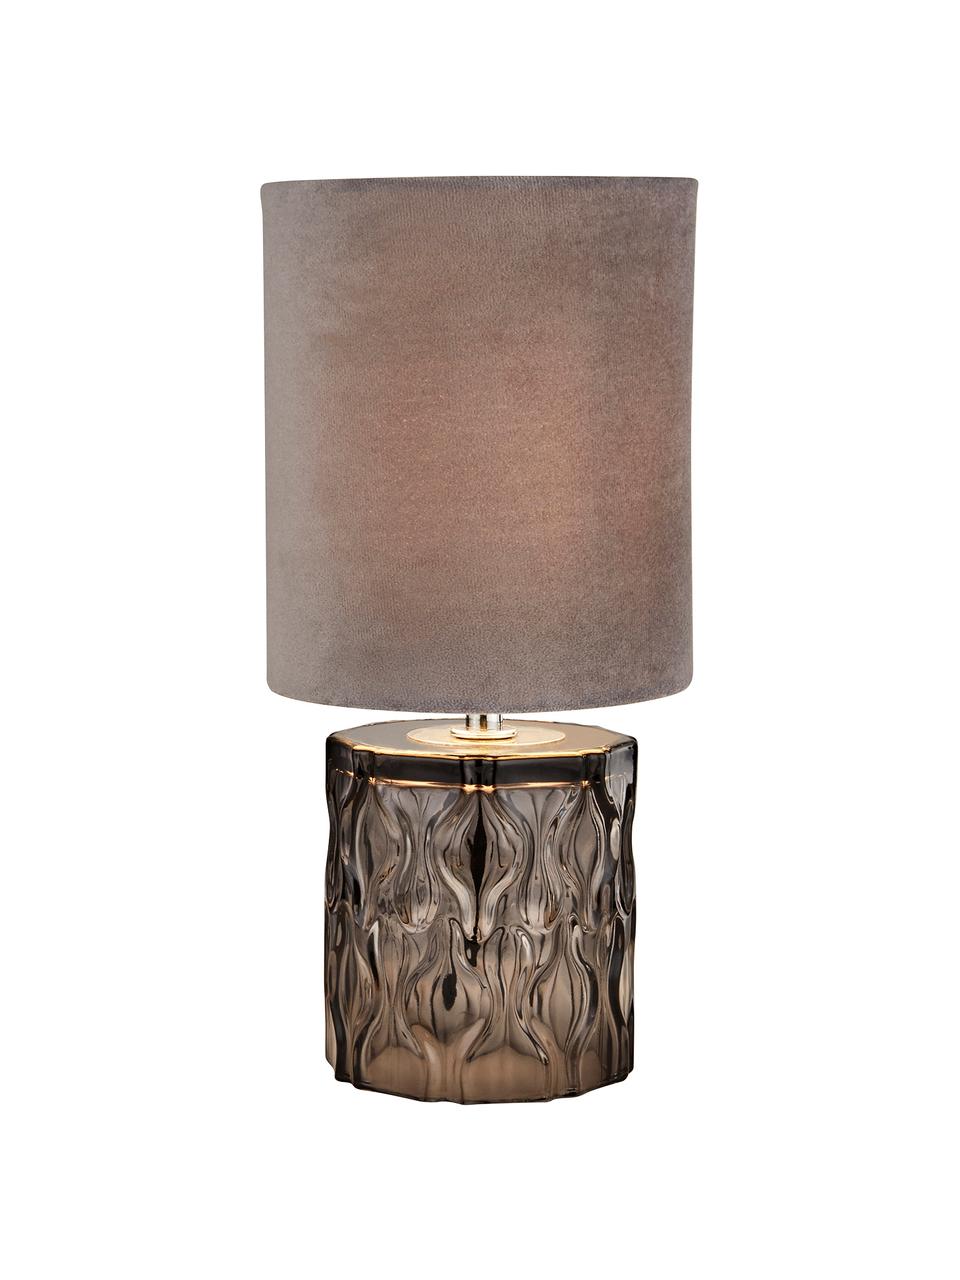 Lampada da tavolo con base in vetro Tina, Paralume: velluto, Base della lampada: vetro, Decorazione: metallo zincato, Grigio, Ø 15 x Alt. 30 cm